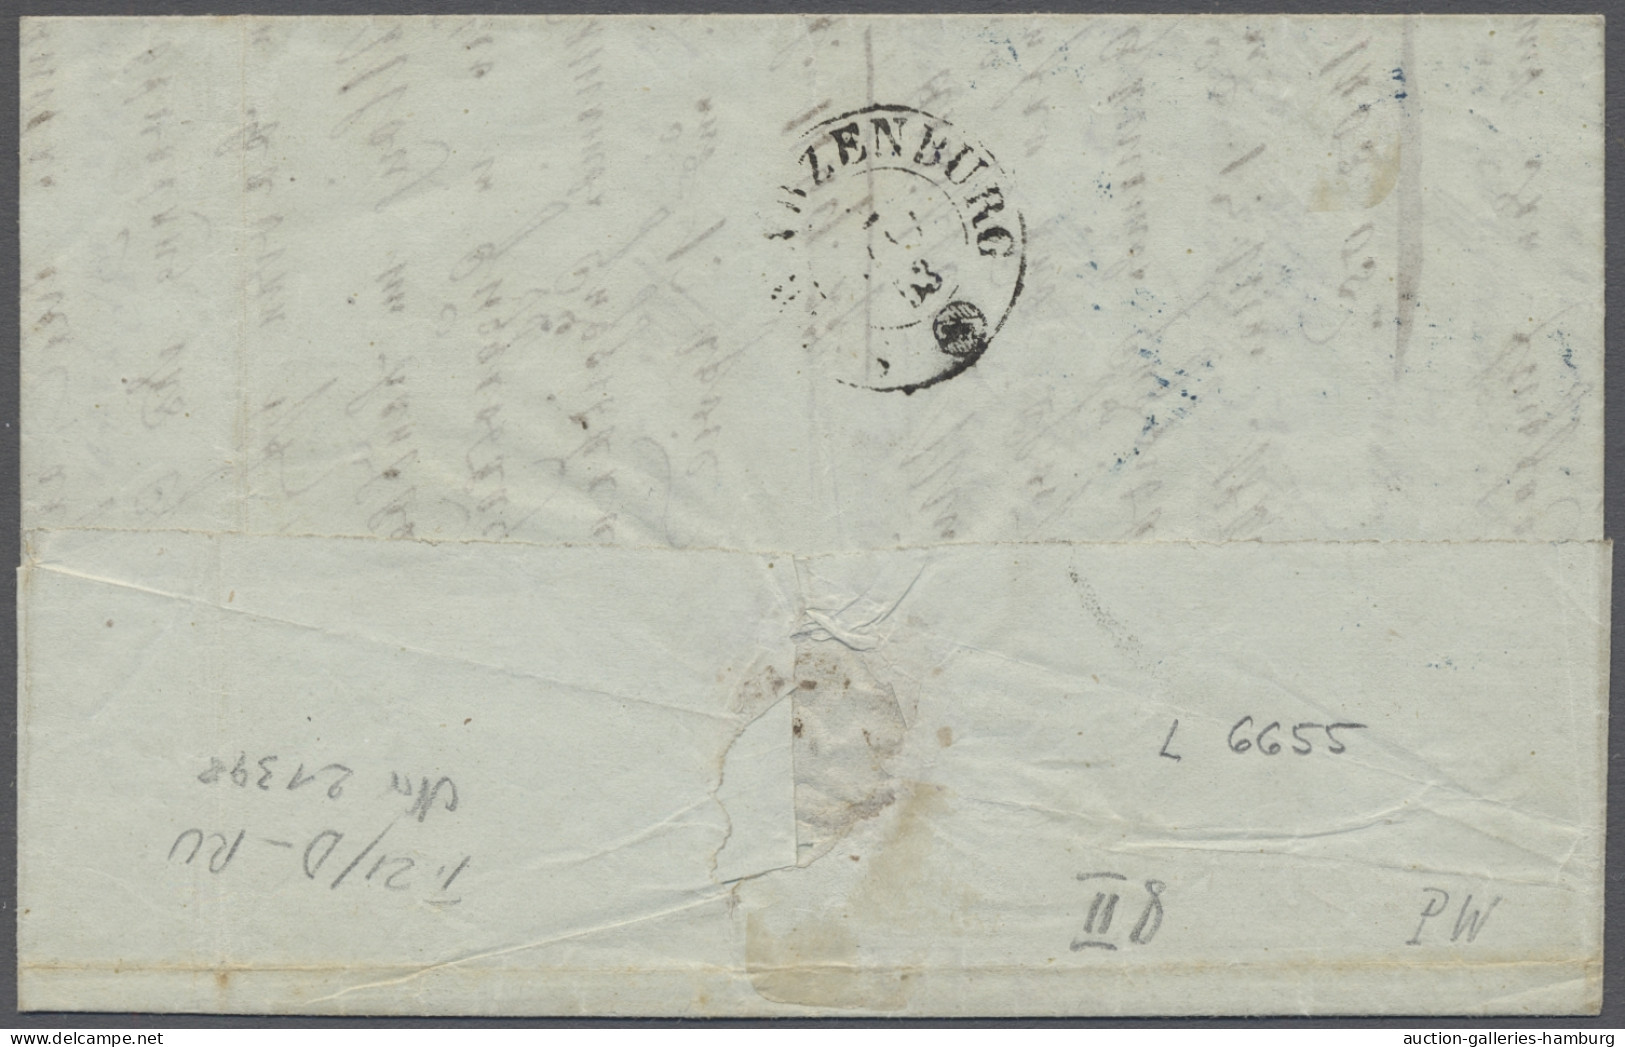 Schweiz: 1853, Rayon II Ohne Kreuzeinfassung, 10 Rp. Schwarz / Orangerot / Braun - Lettres & Documents